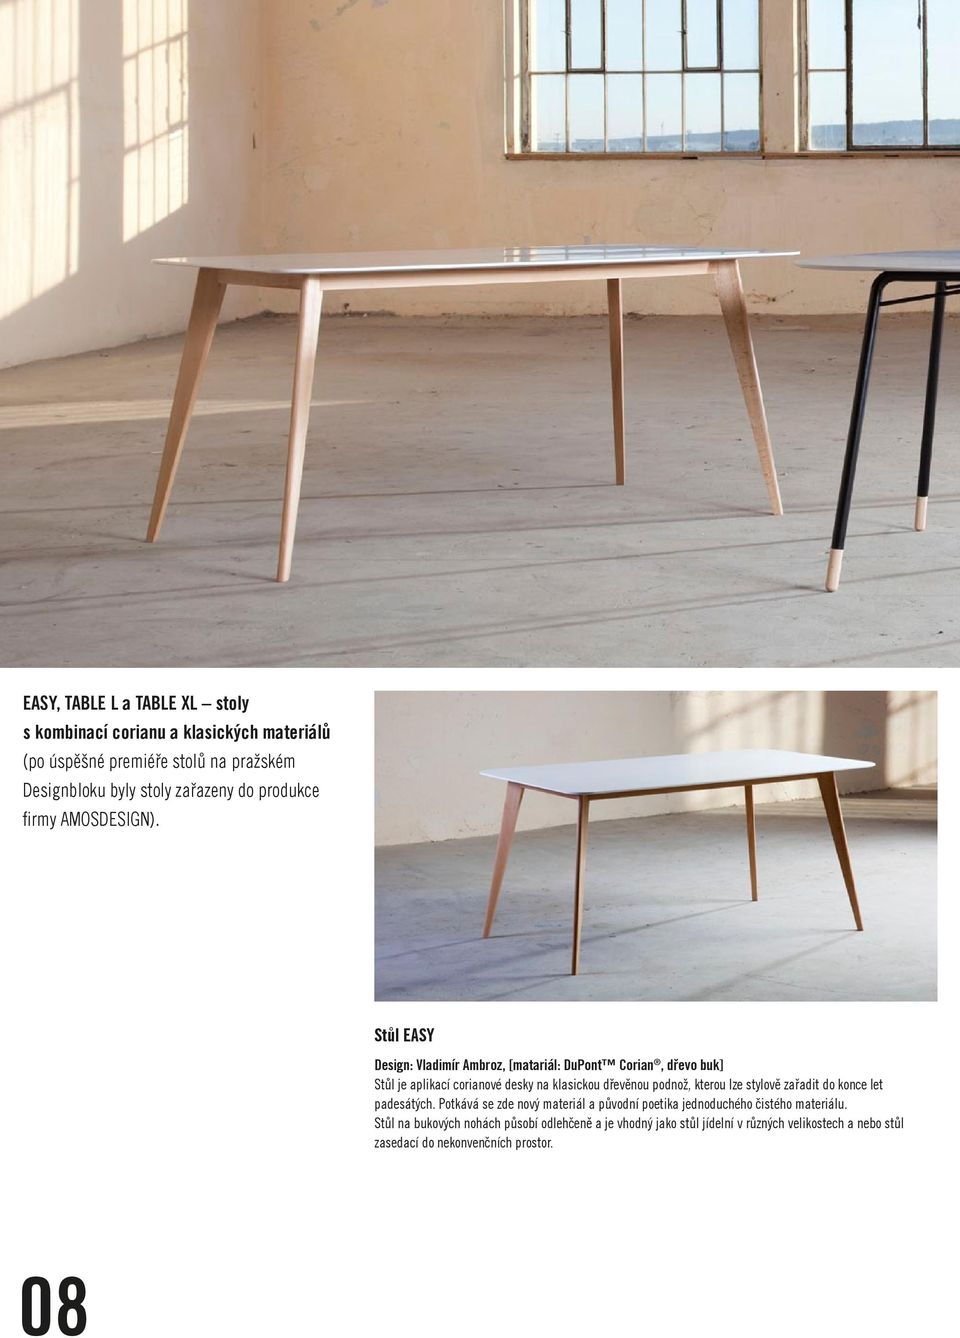 Stůl EASY Design: Vladimír Ambroz, [matariál: DuPont Corian, dřevo buk] Stůl je aplikací corianové desky na klasickou dřevěnou podnož, kterou lze